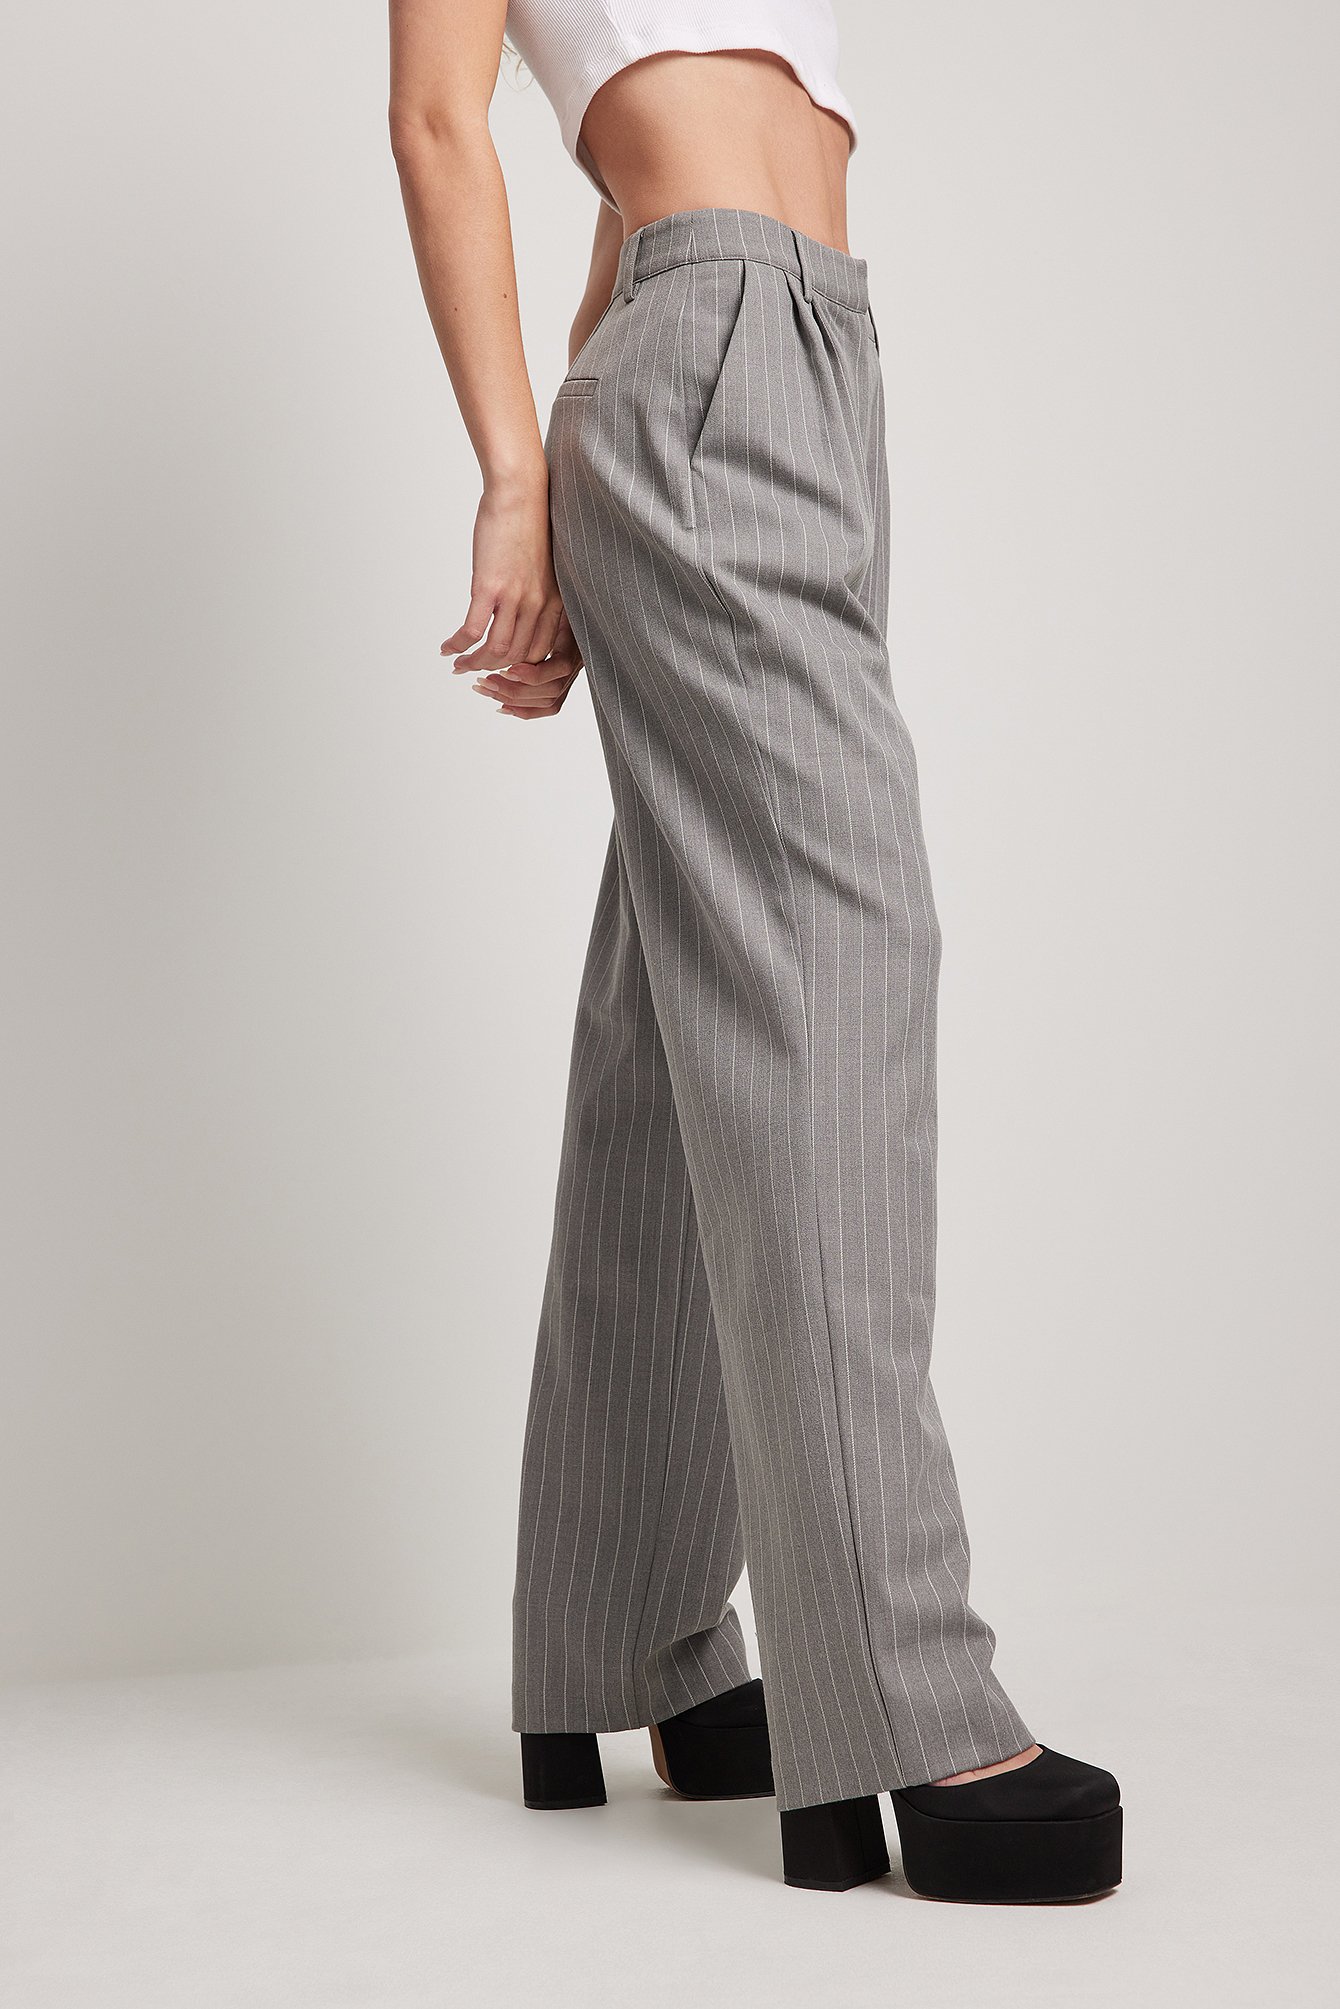 Mode Broeken Hoge taille broeken Esprit Hoge taille broek wit-blauw gestreept patroon casual uitstraling 